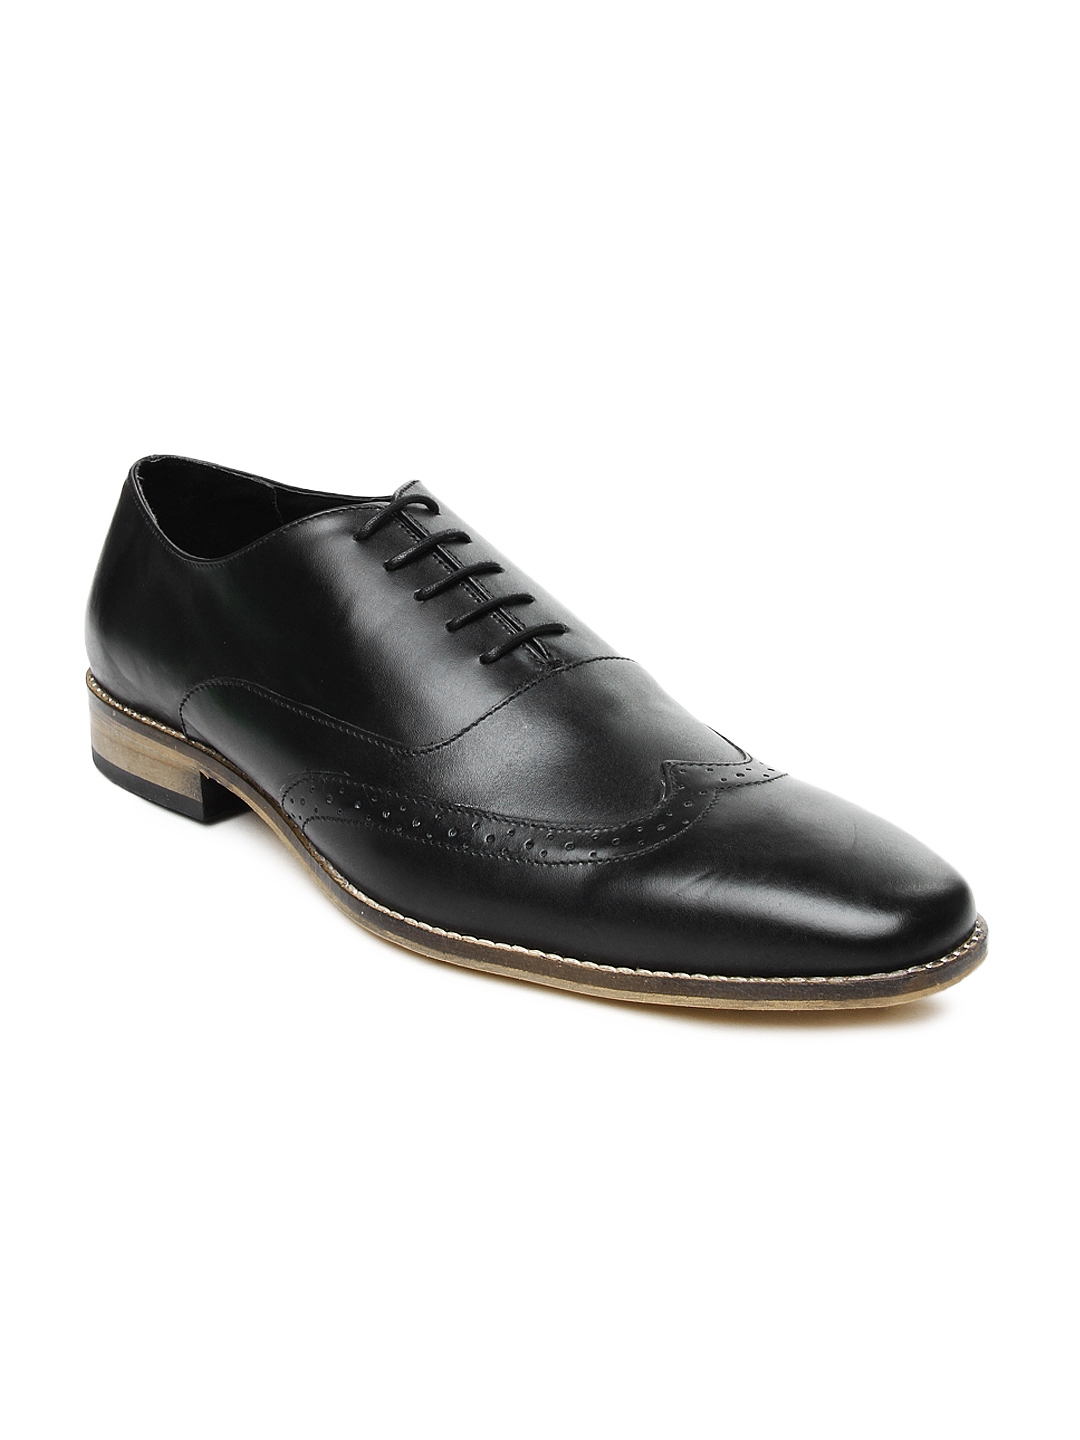 Buy Van Heusen Men Black Leather Semiformal Shoes - Formal Shoes for ...